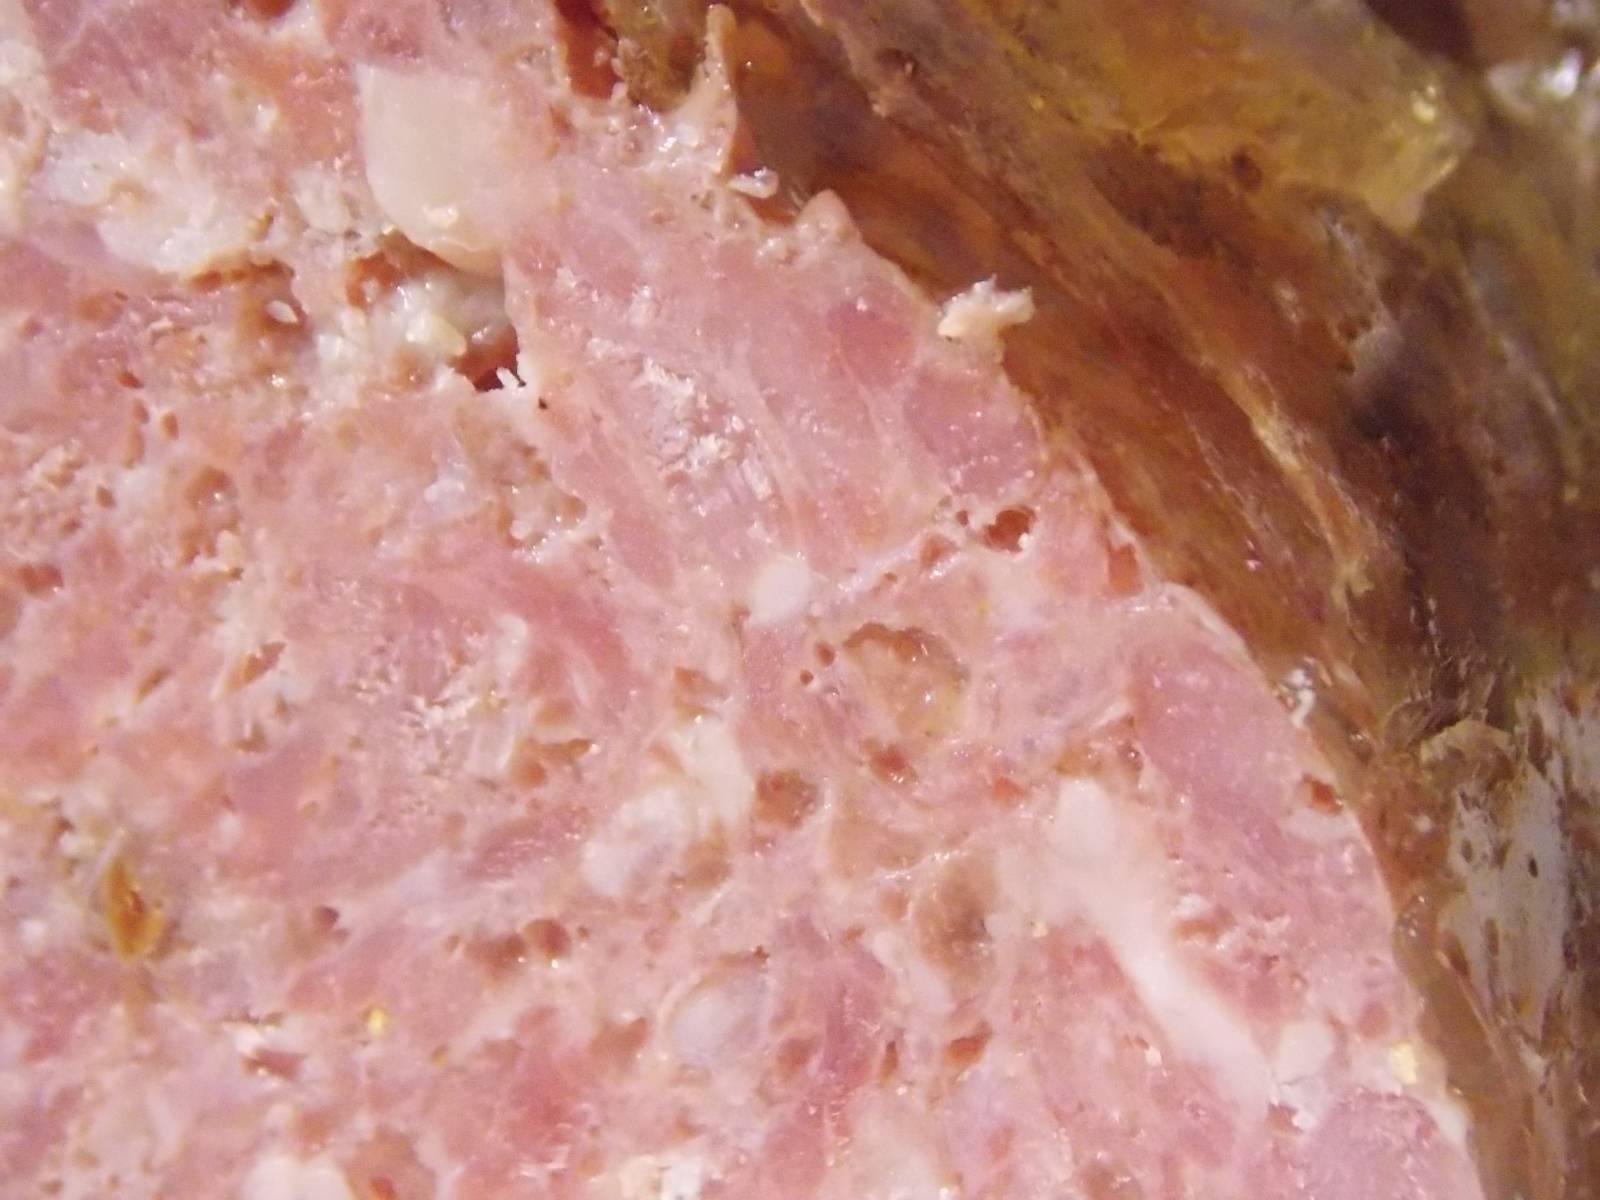 Chicken and pork ham in Tescoma ham maker